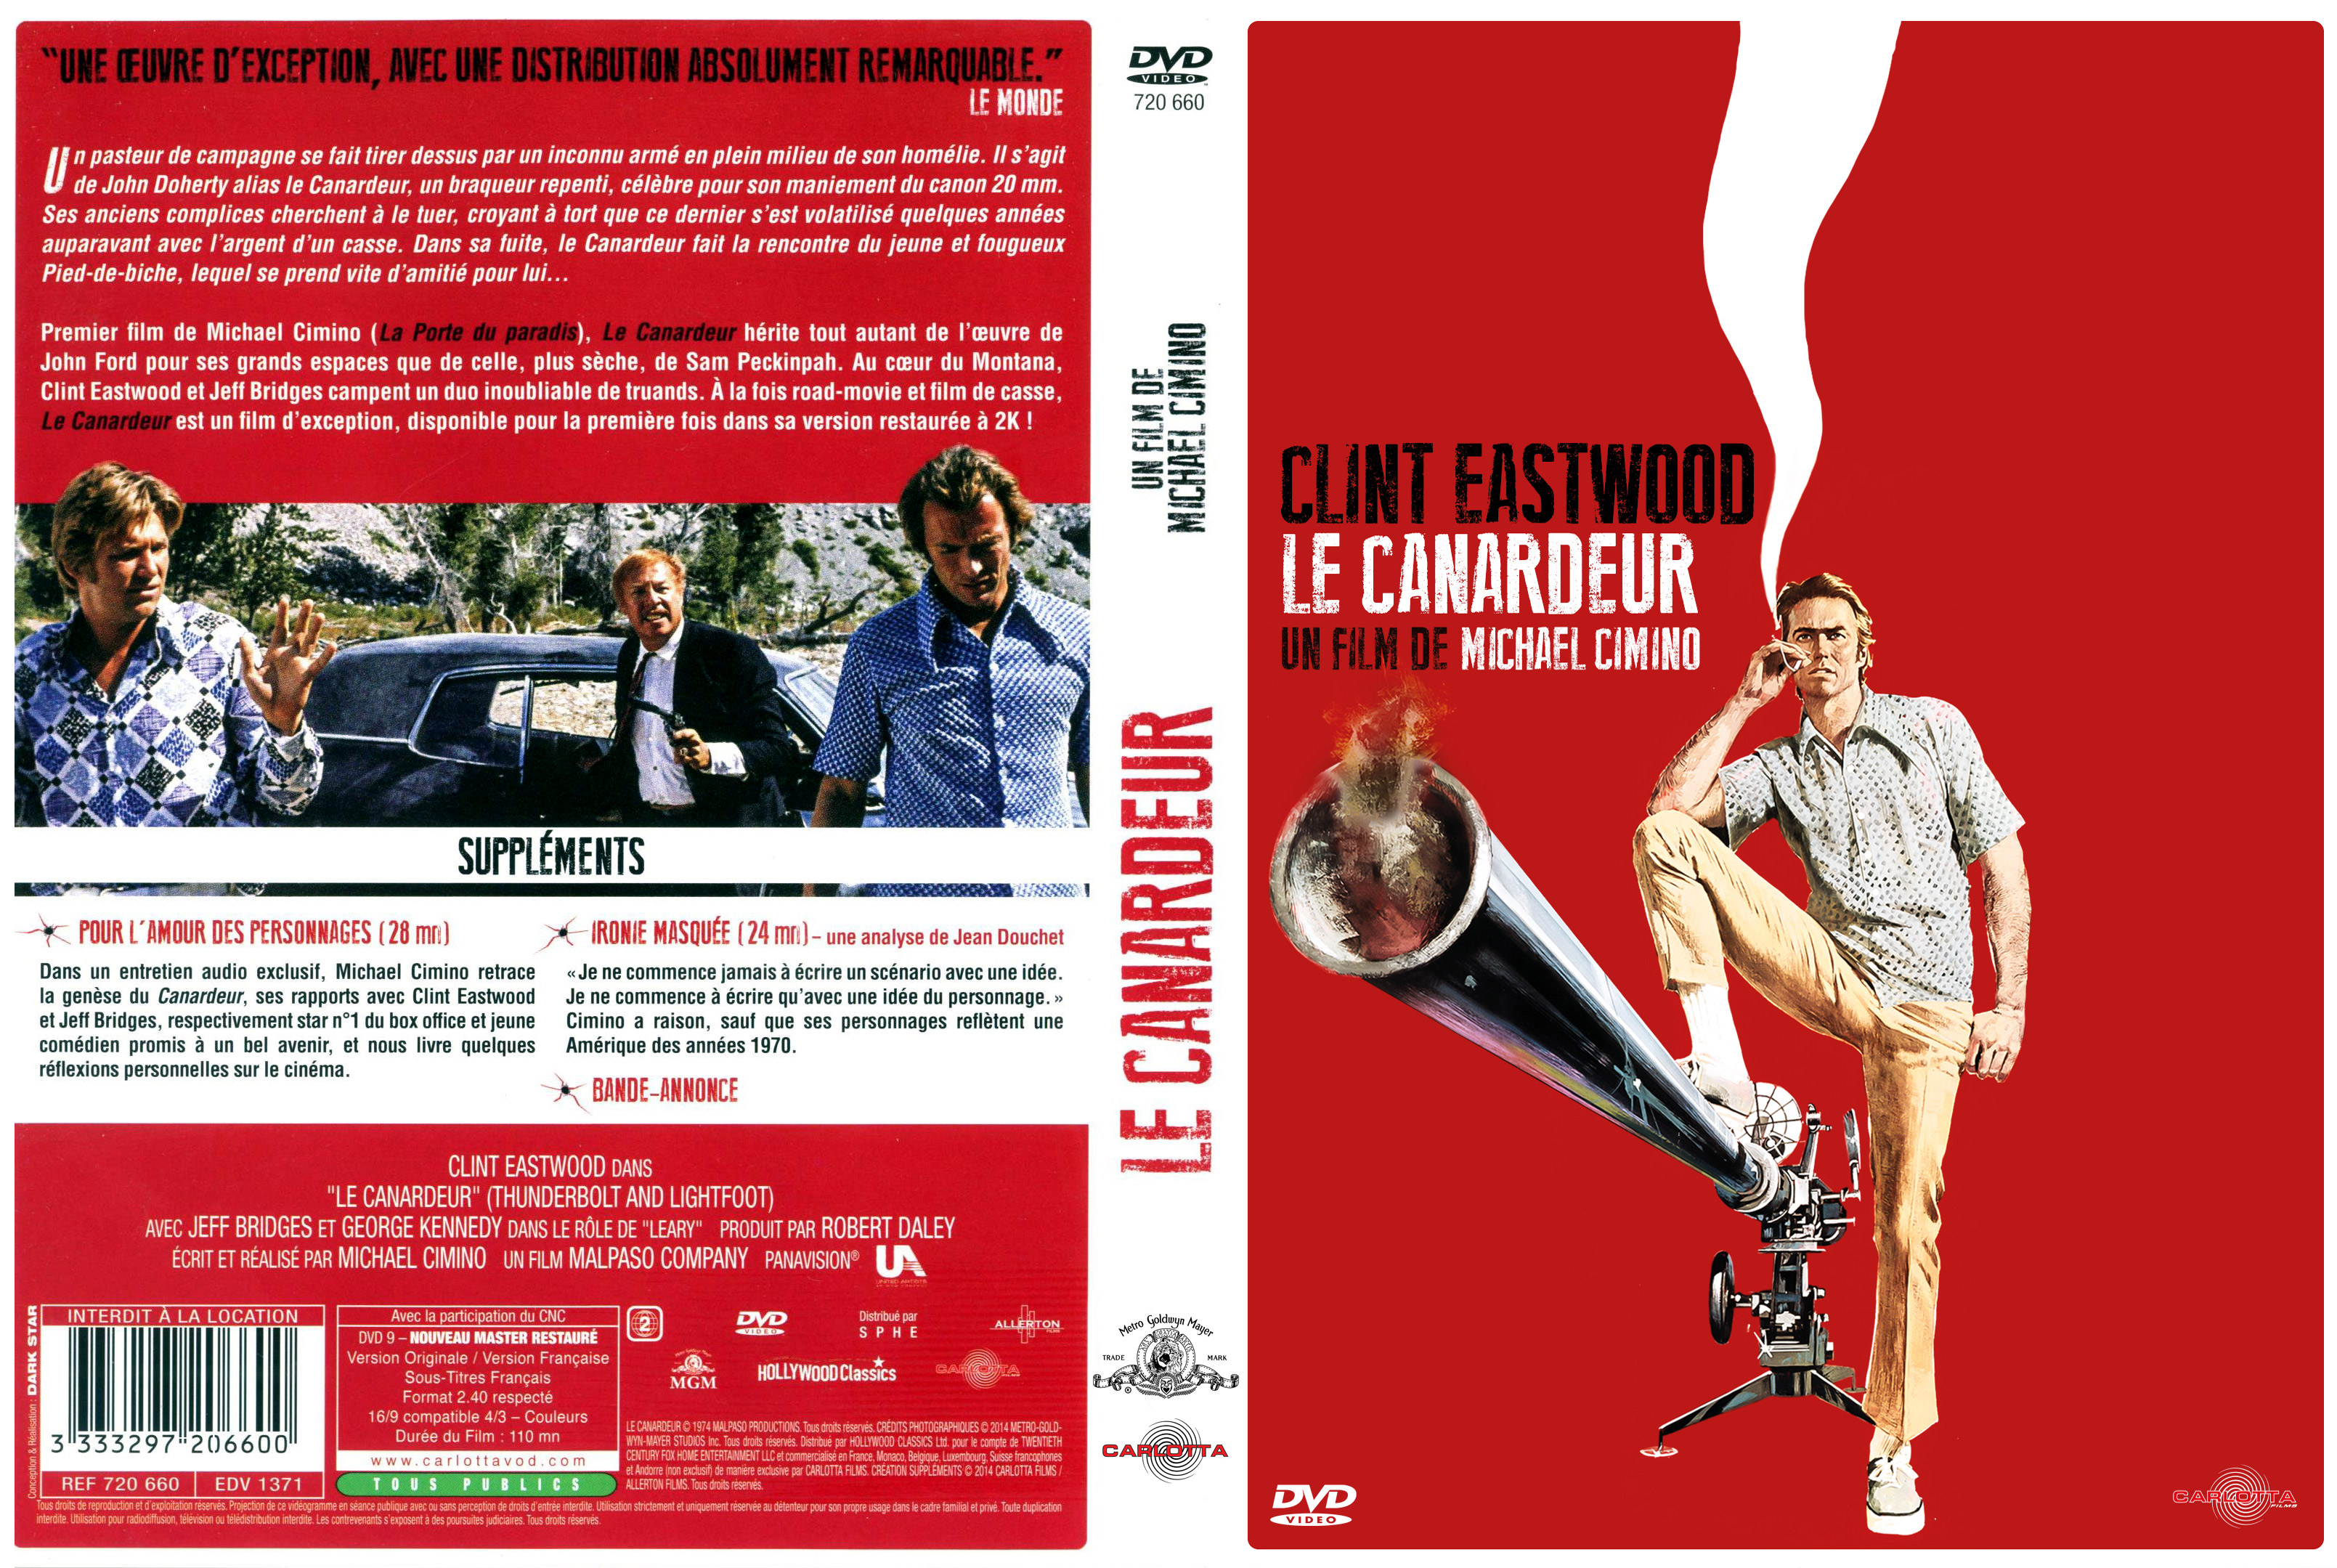 Jaquette DVD Le canardeur v2